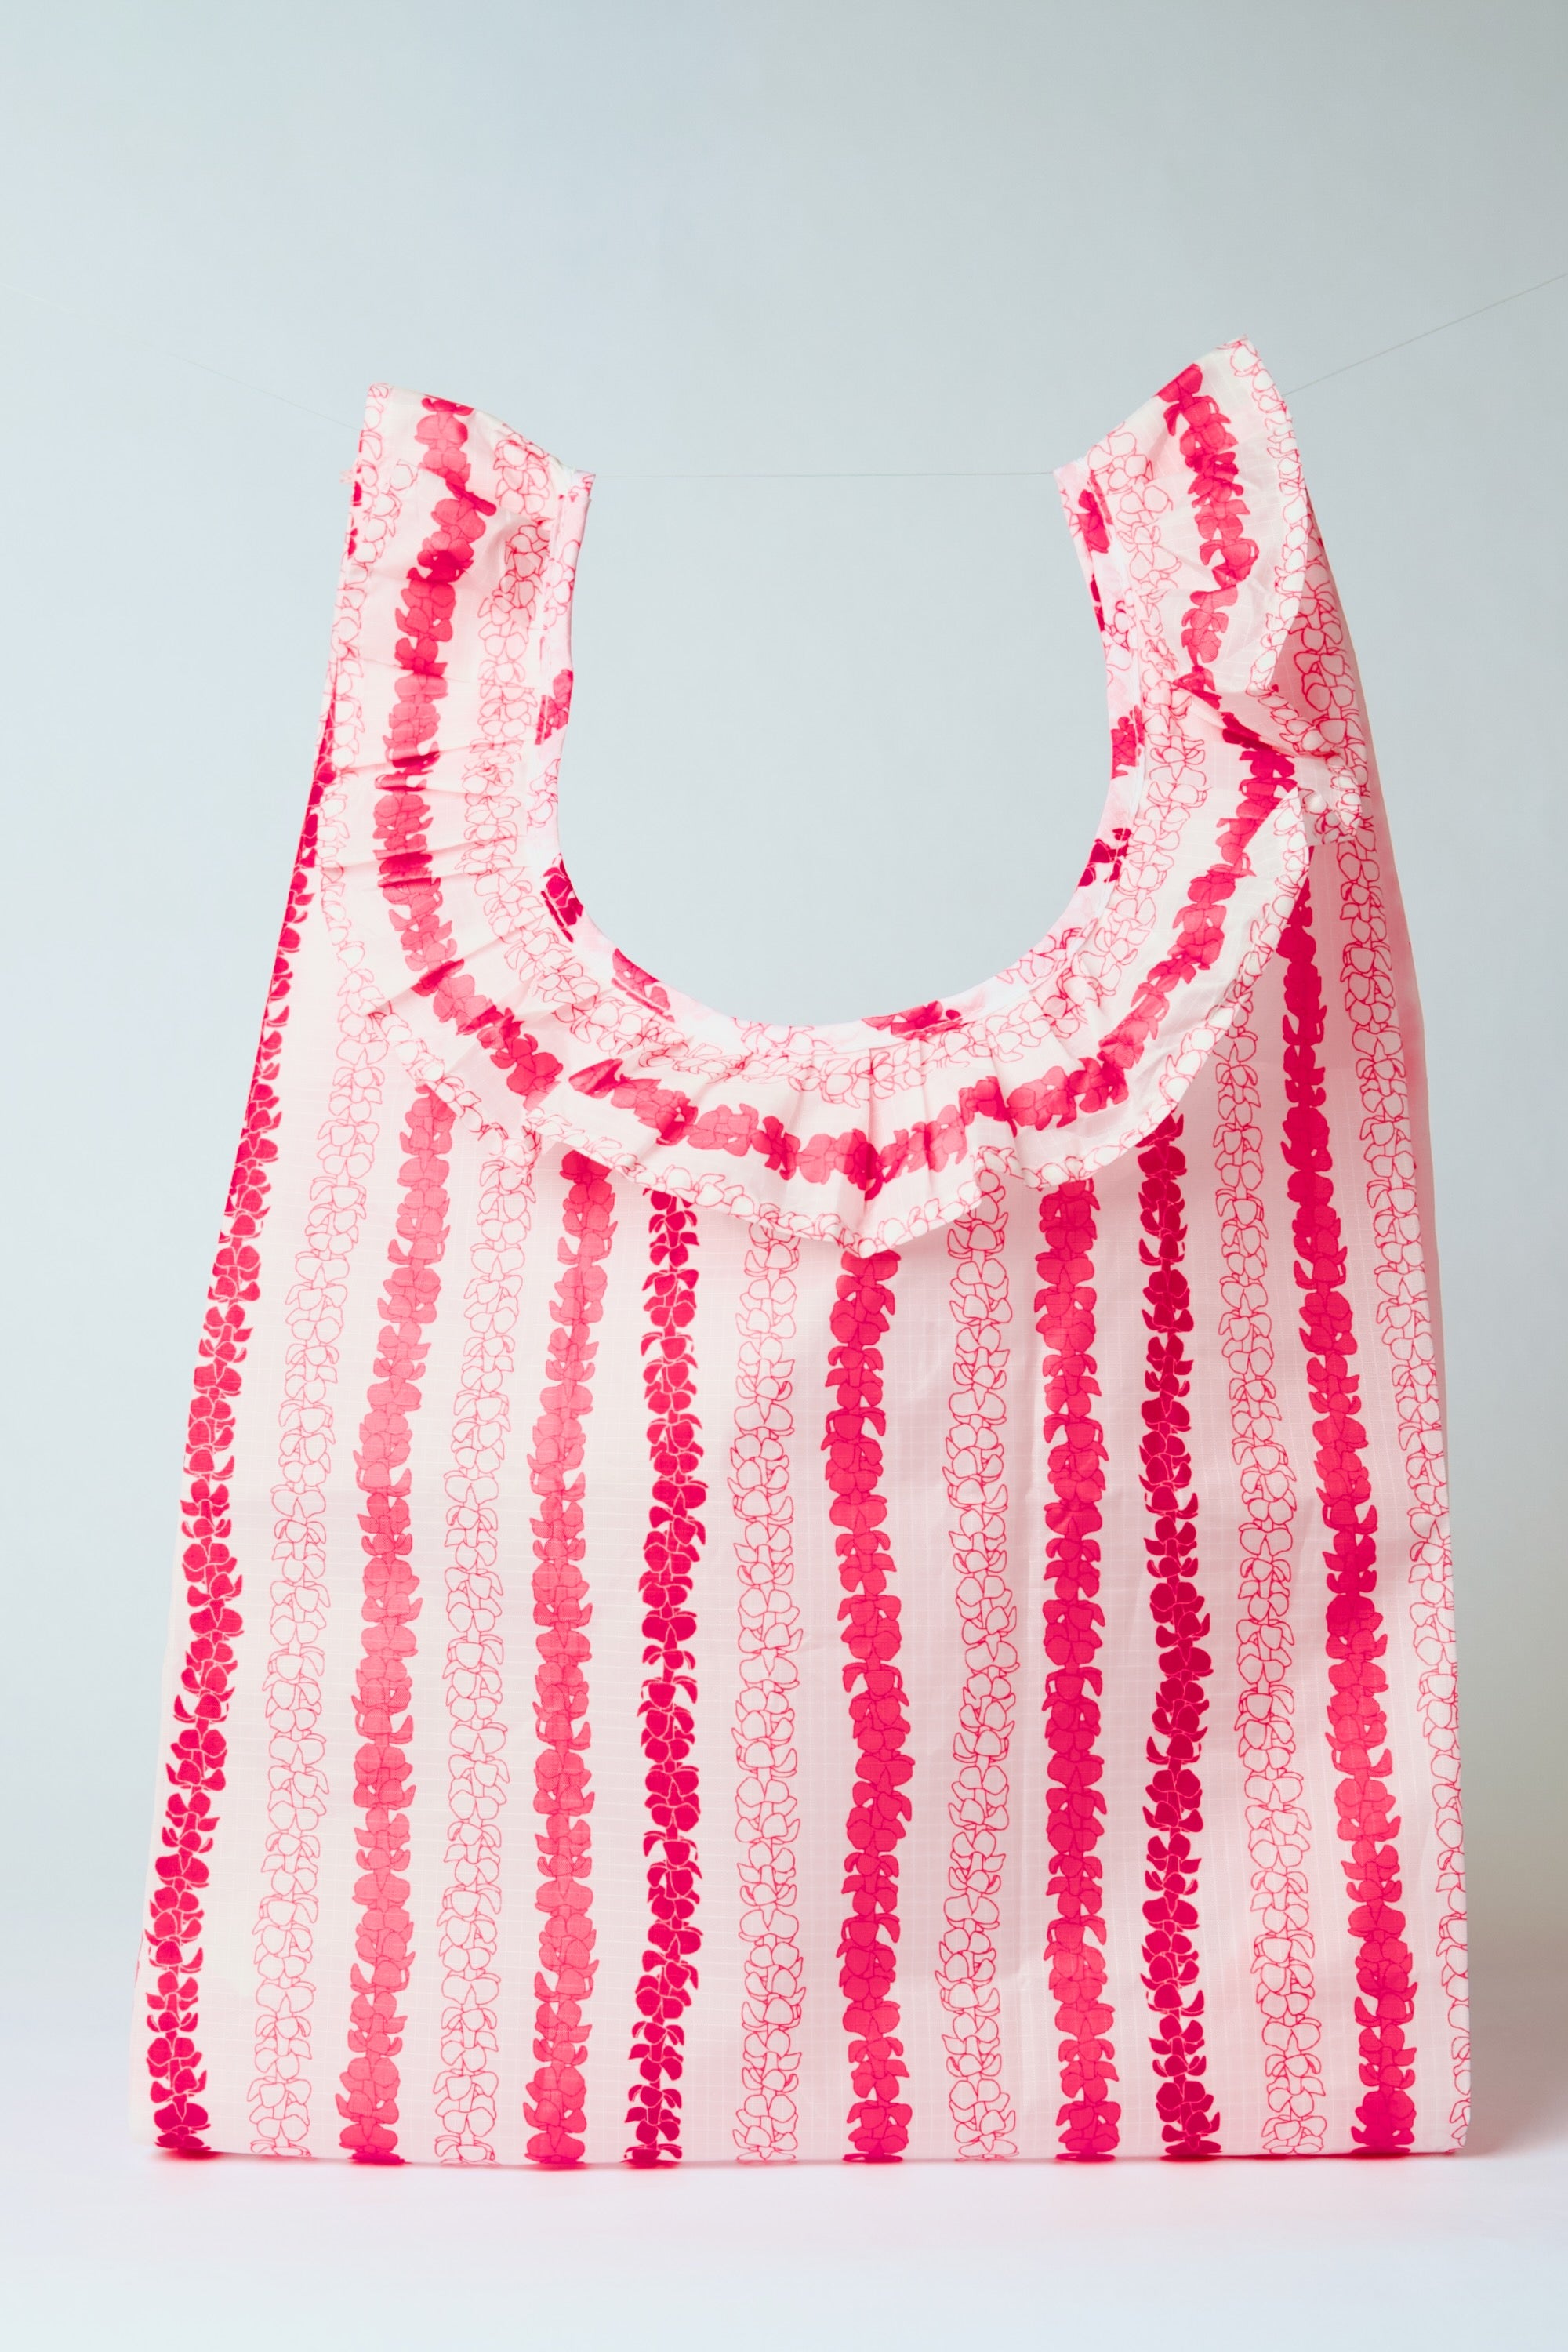 Medium Lei Bag Pua Kenikeni Pink